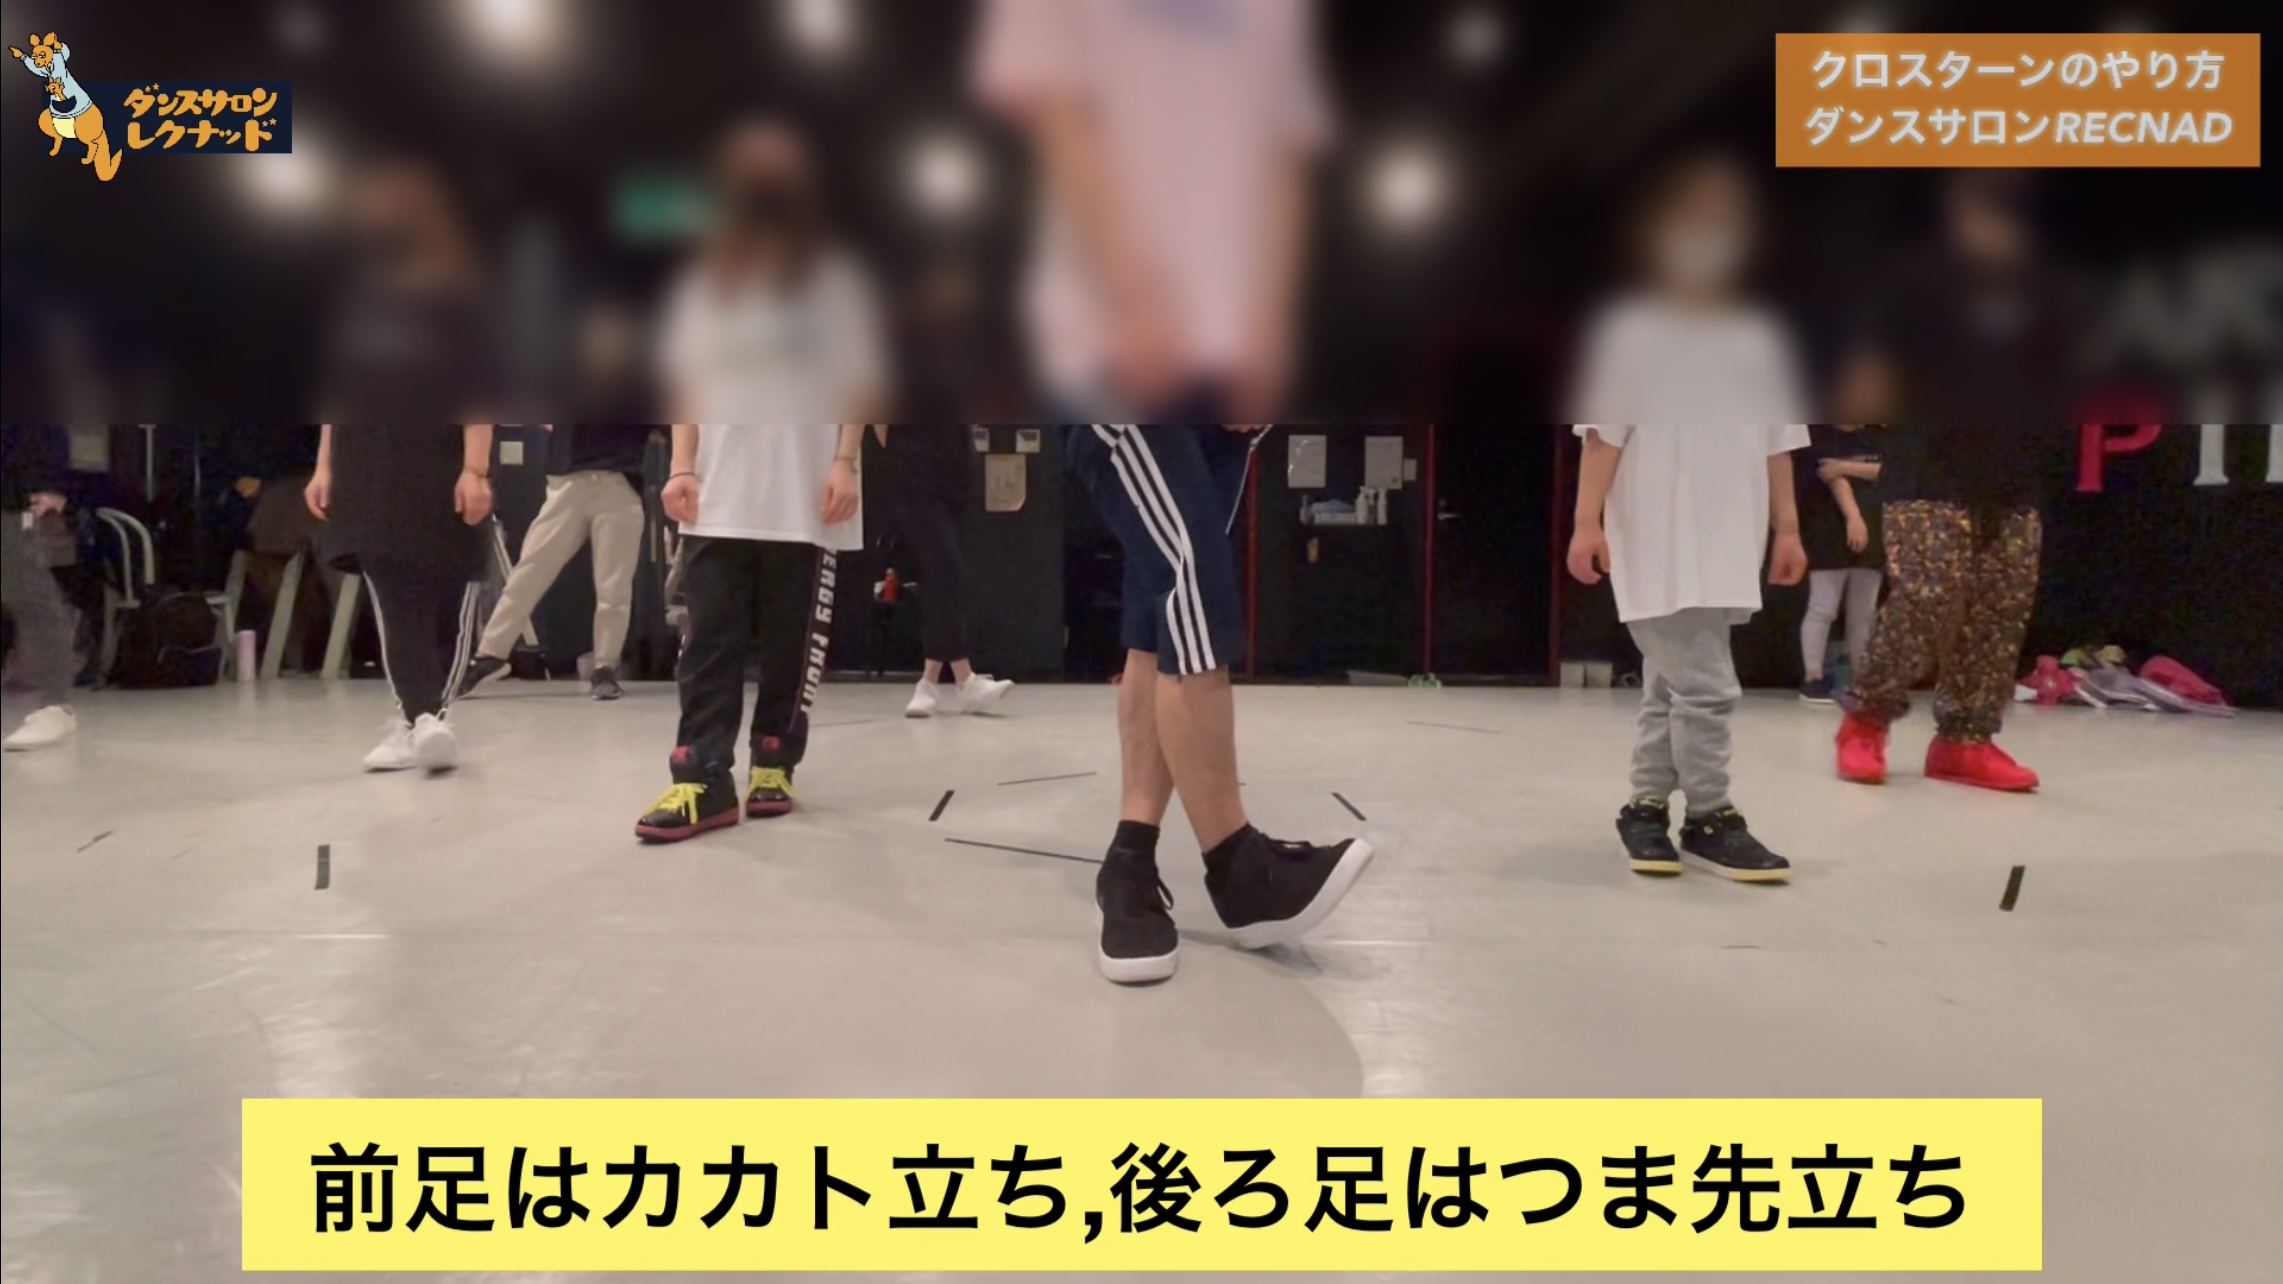 ターン 【ダンス動画】プロダンサーが教えるダンスのターンのやり方